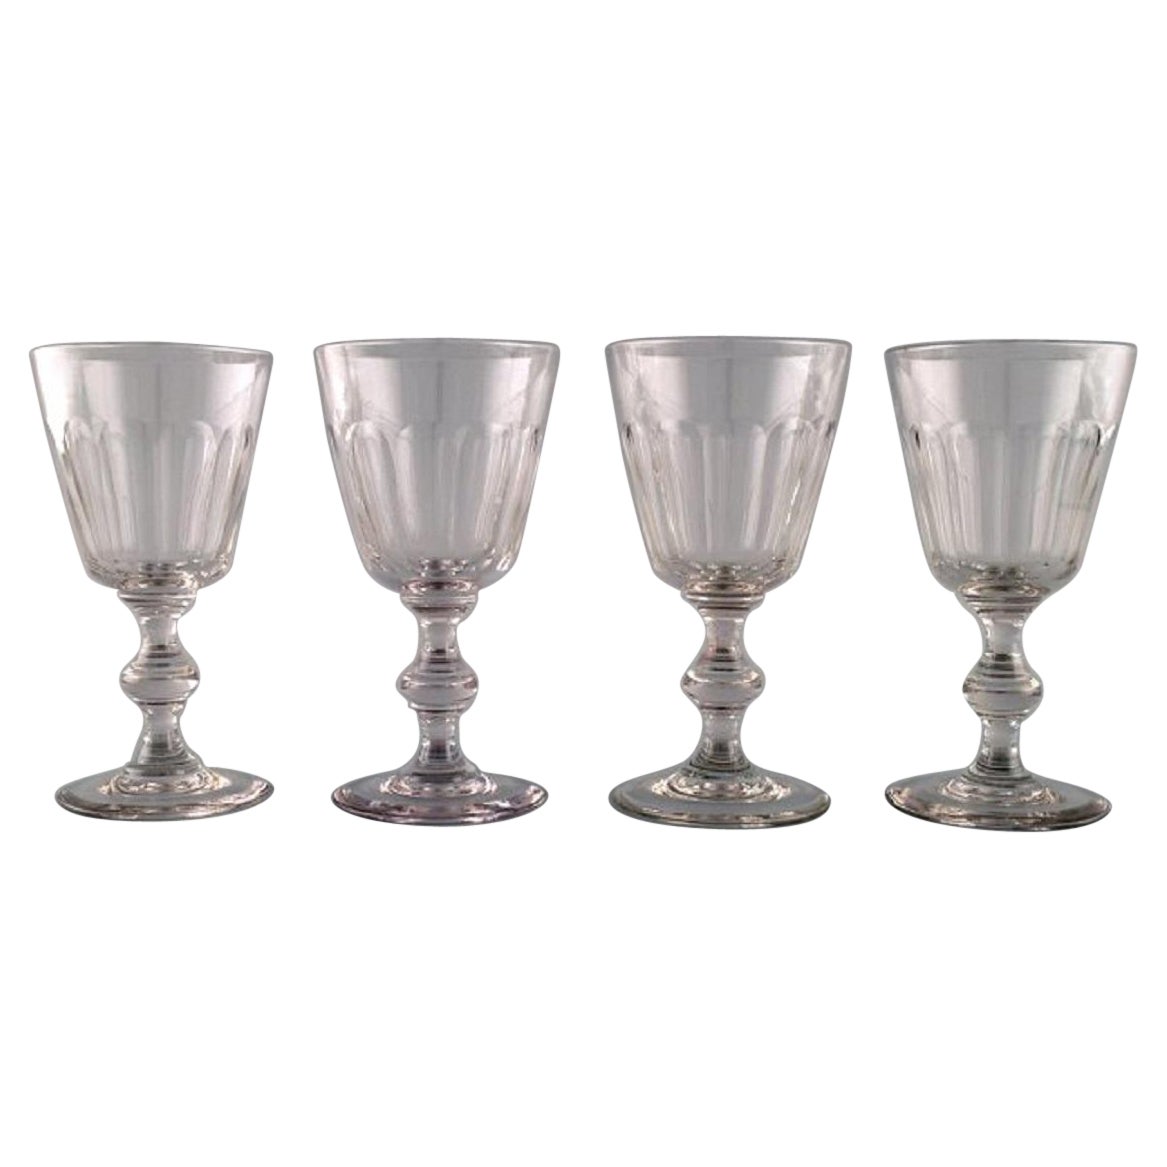 Holmegaard Glasværk, Denmark, Four Christian VIII Berlinois Red Wine Glasses